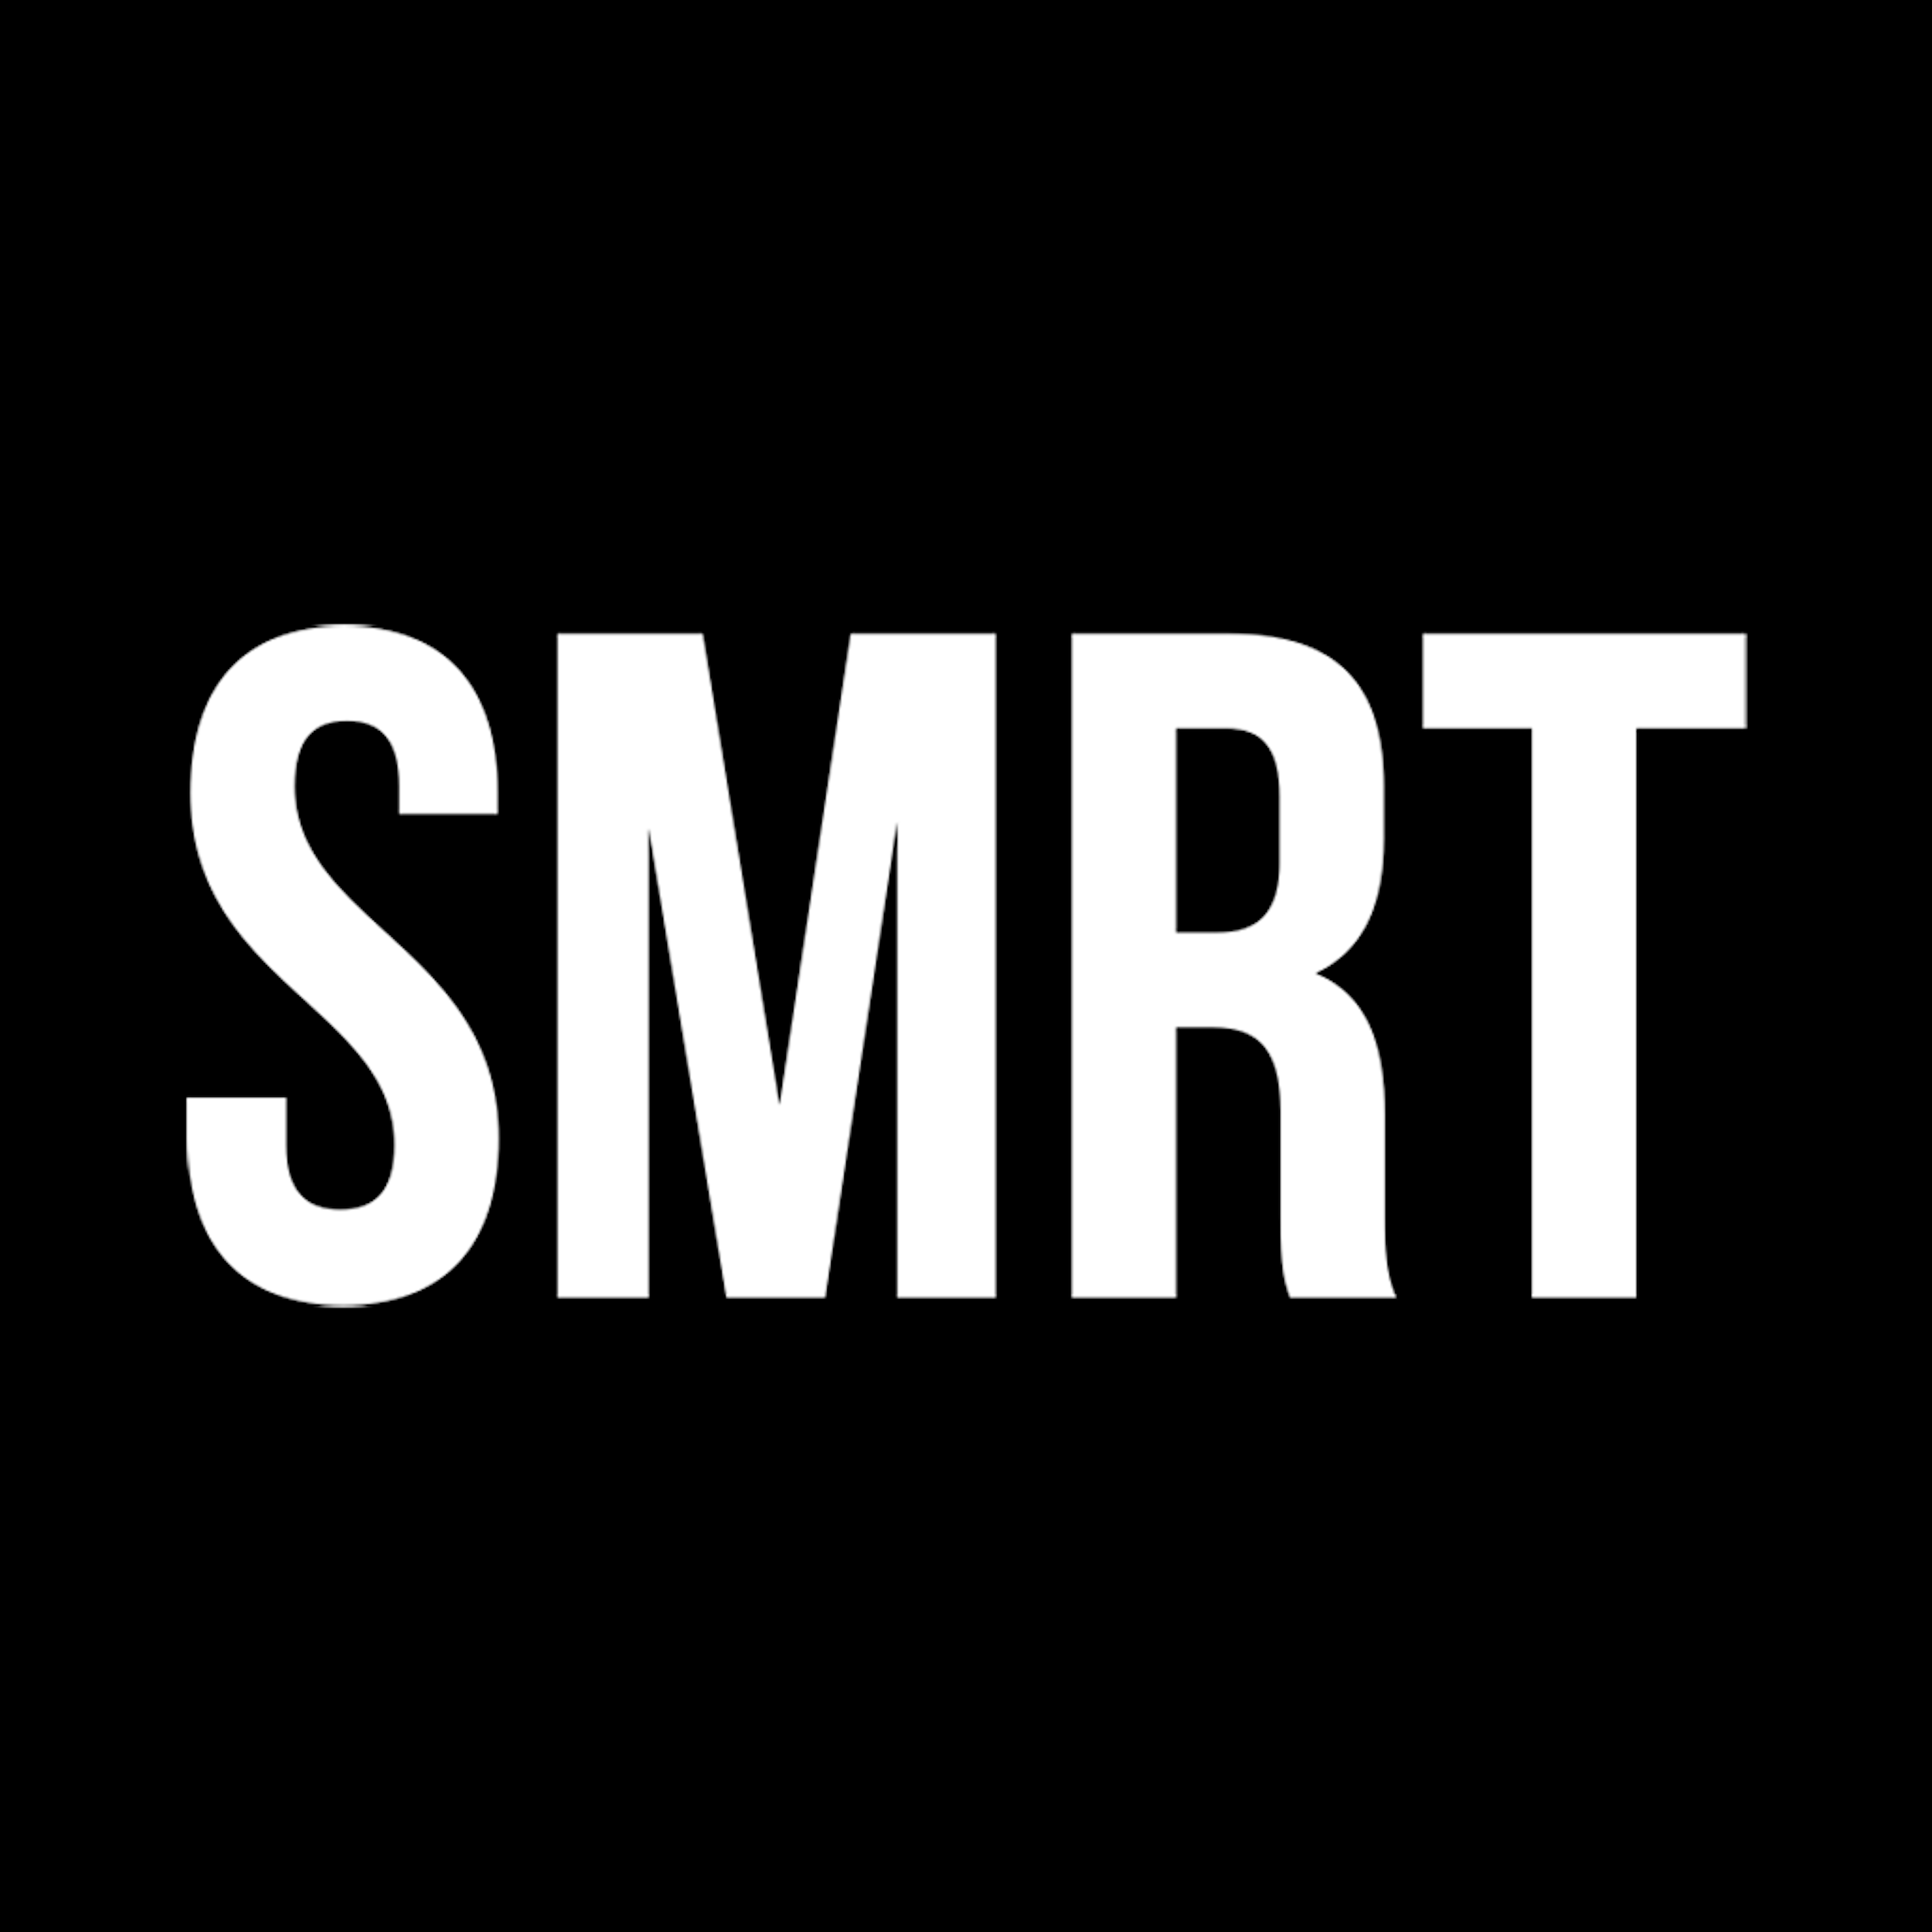 SMRT Systems Logo